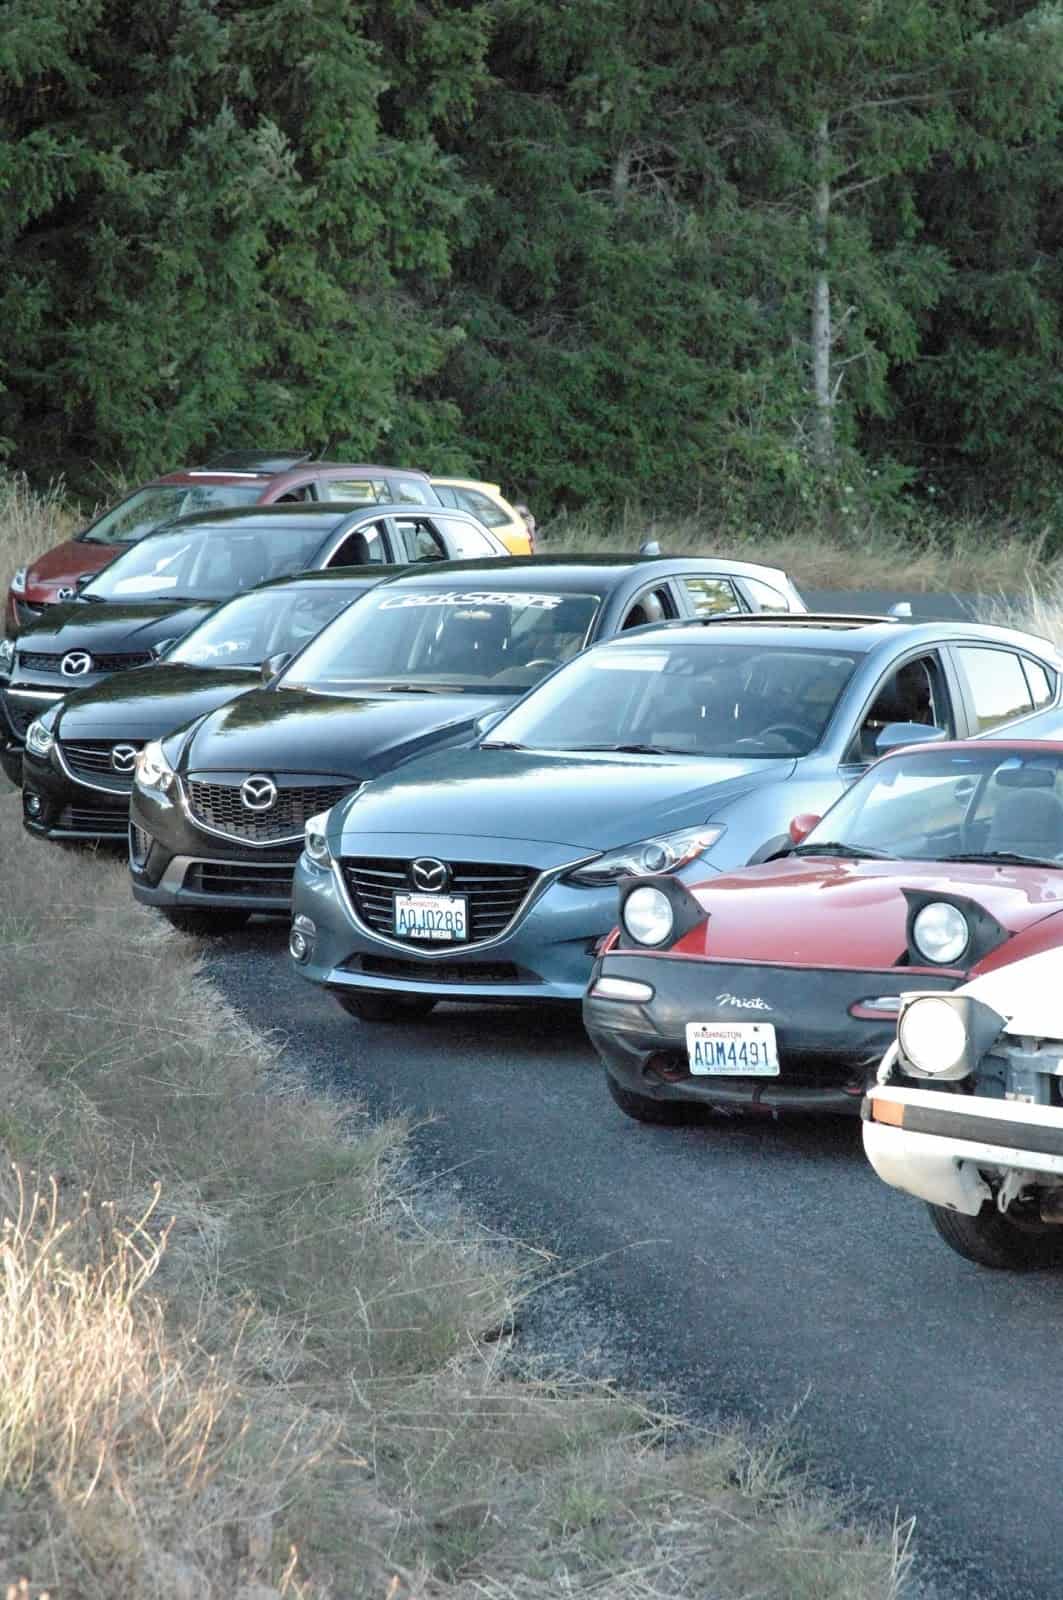 CorkSport's Mazda family.